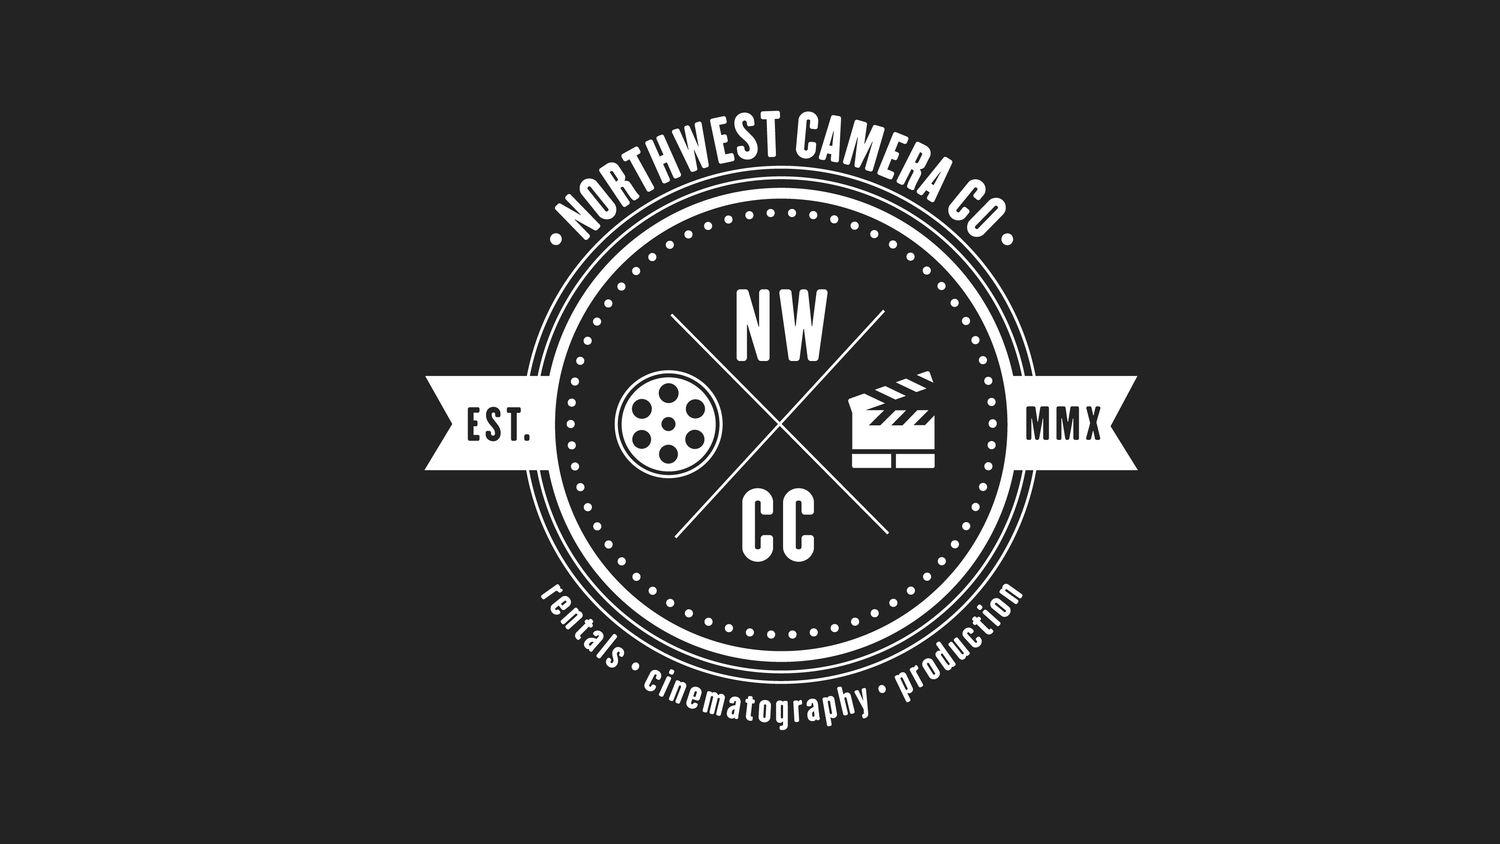 NWCC Logo - Northwest Camera Co.